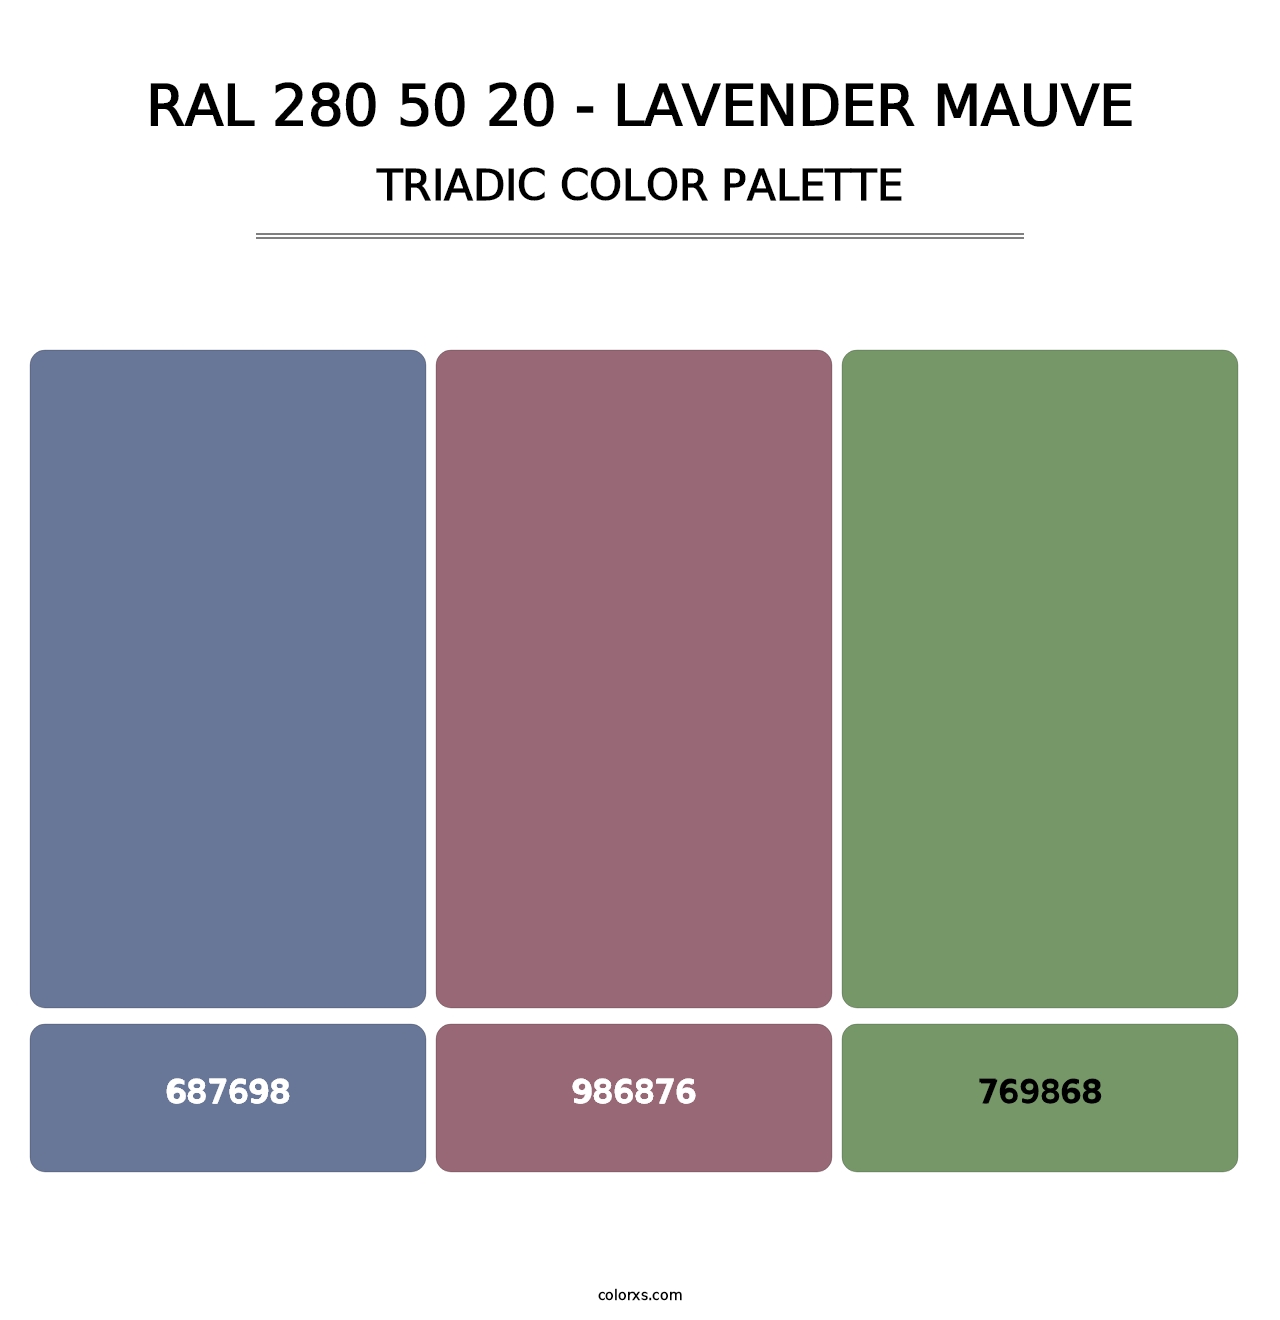 RAL 280 50 20 - Lavender Mauve - Triadic Color Palette